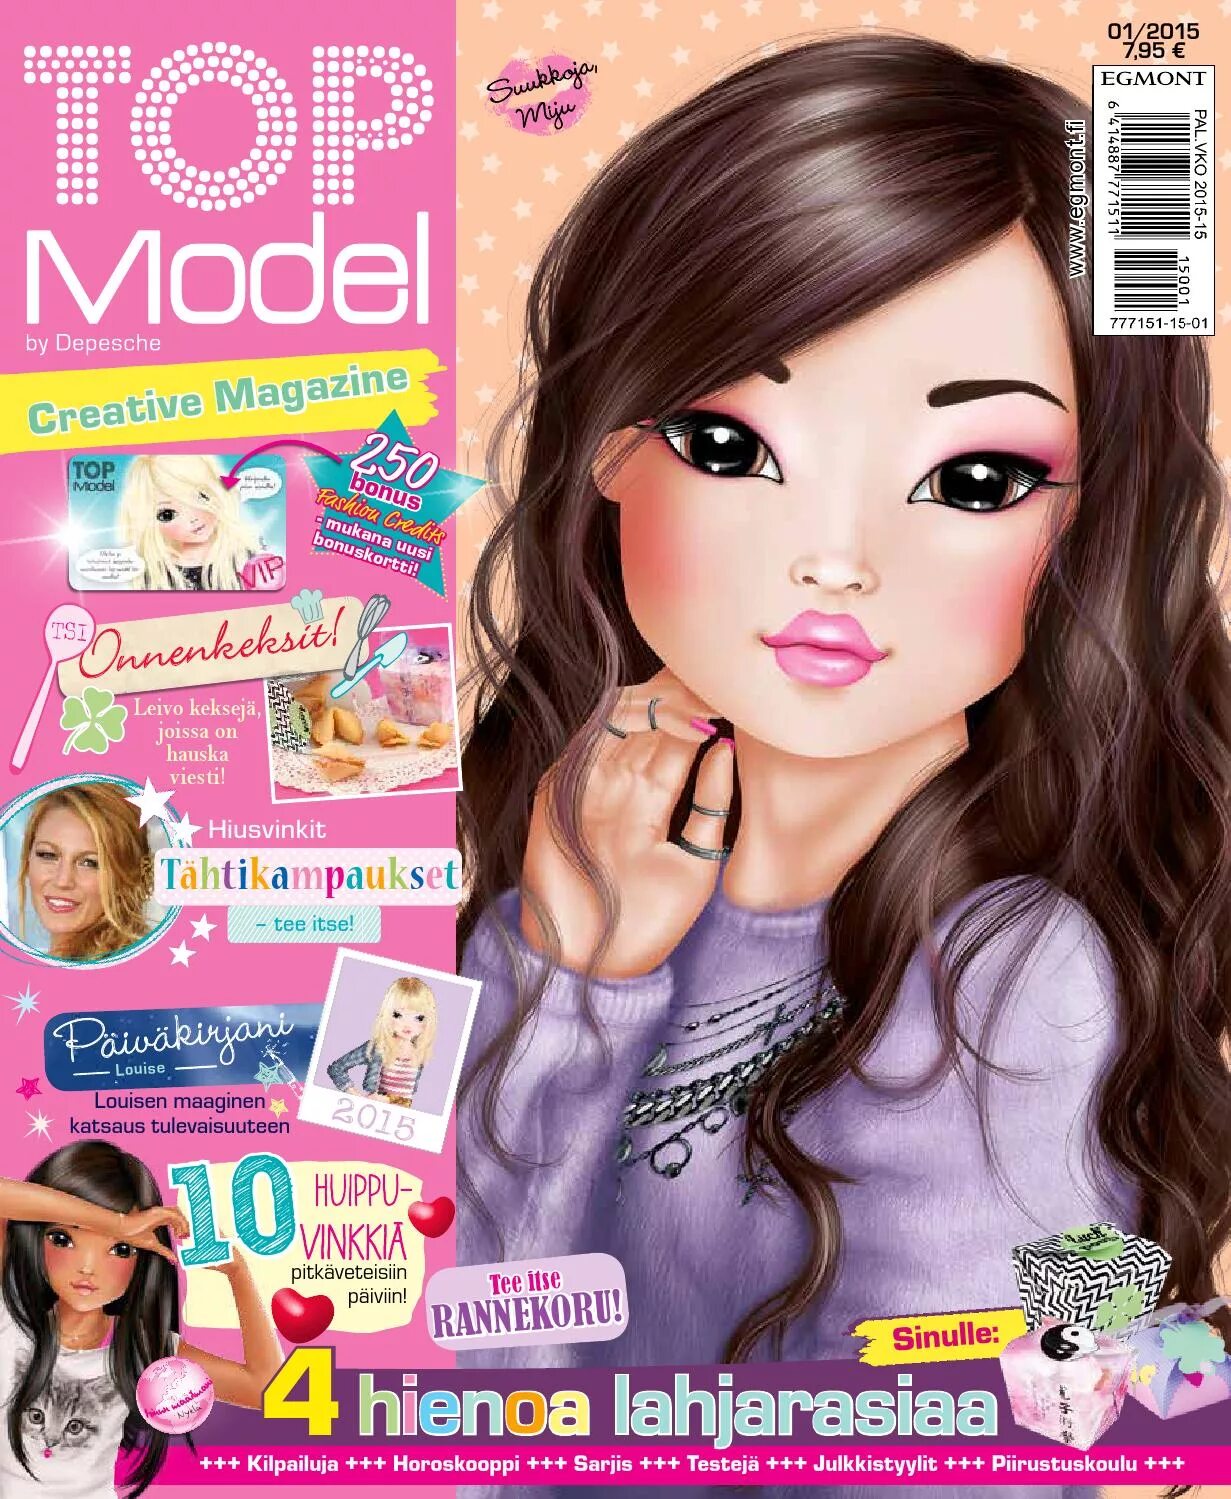 Top magazine. Топ-модель журнал для девочек. Журнал топ модели. Топ-модель детский журнал. Top model журнал для девочек.